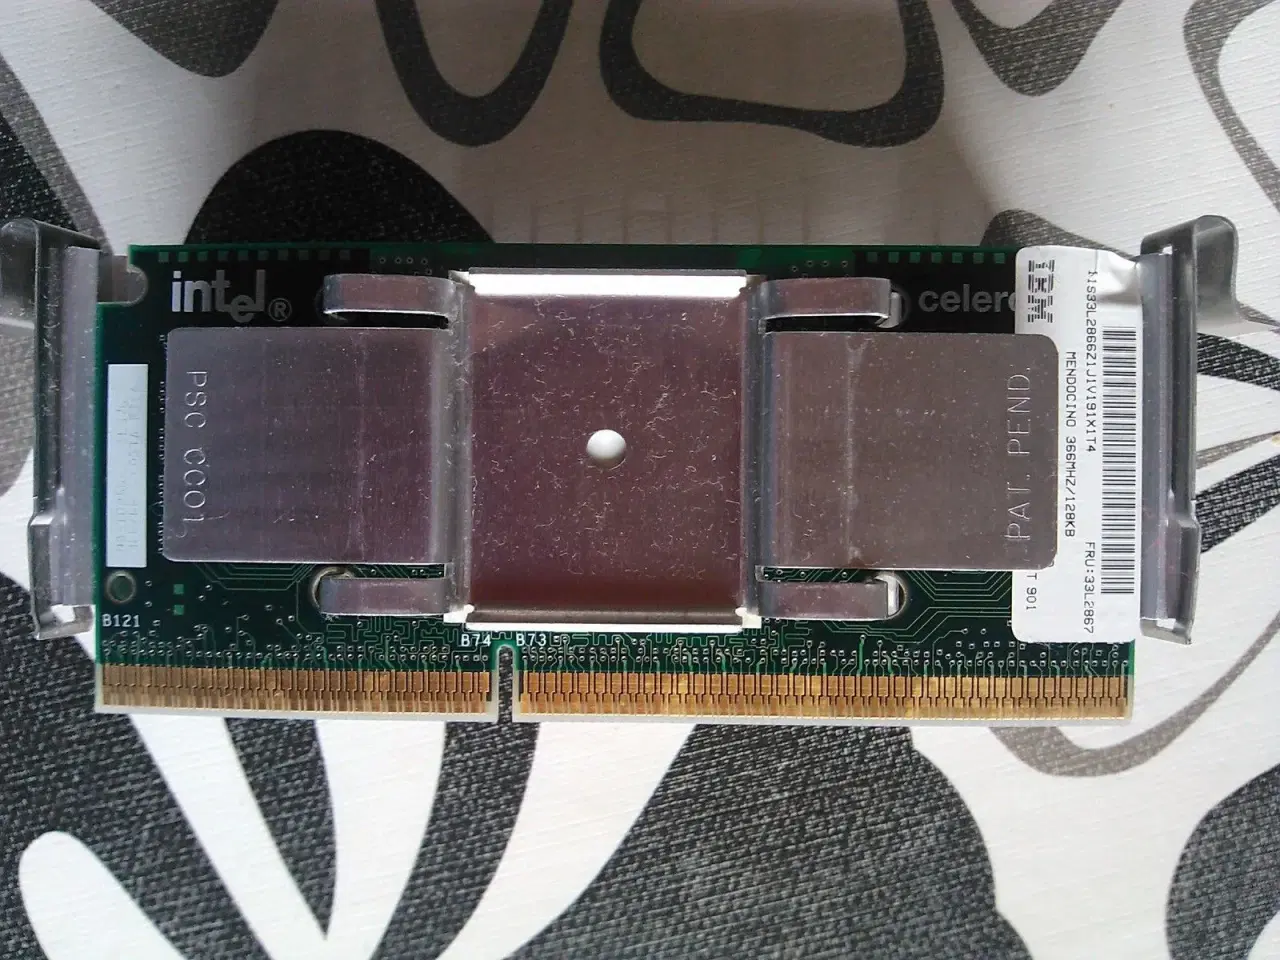 Billede 1 - Intel Celeron, Slot 1, 366MHz